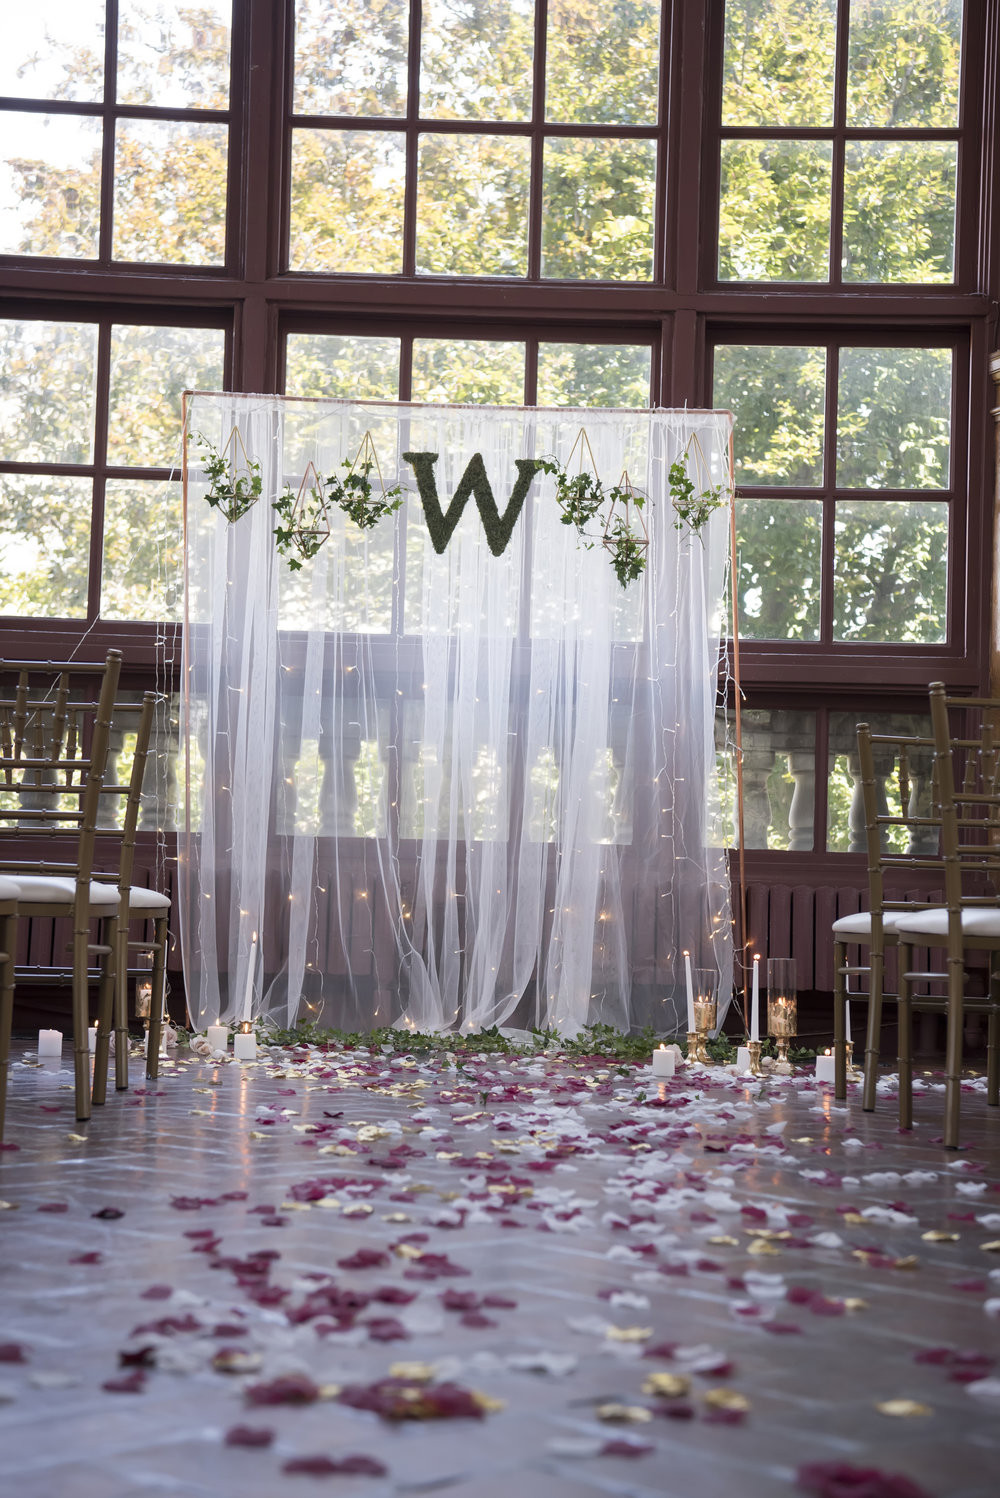 DIY Backdrops For Wedding
 DIY Wedding Ceremony Backdrop No Tools Required